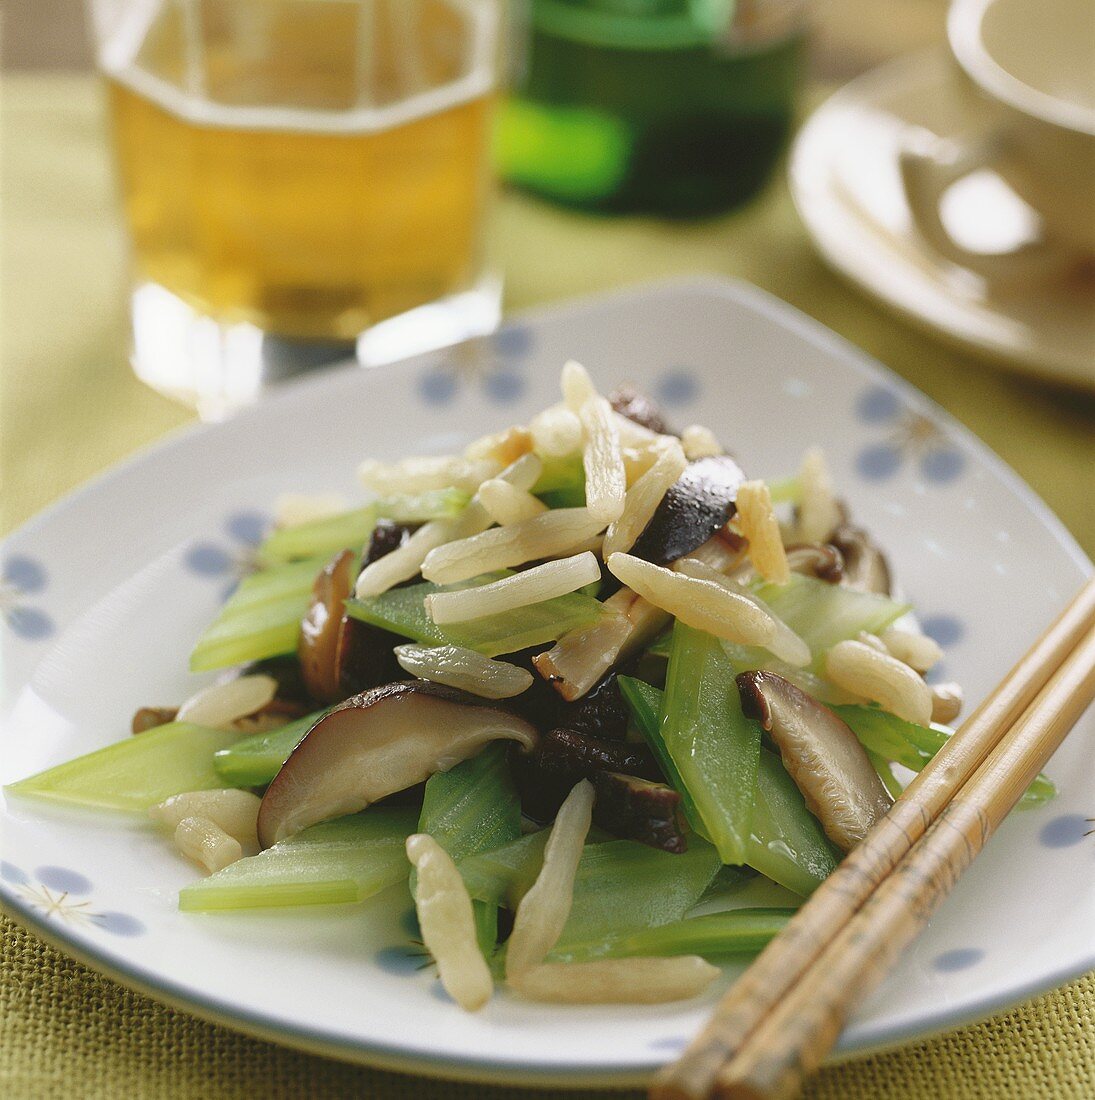 Mushroom & celery stir-fry with Japanese Mondo grass (China)